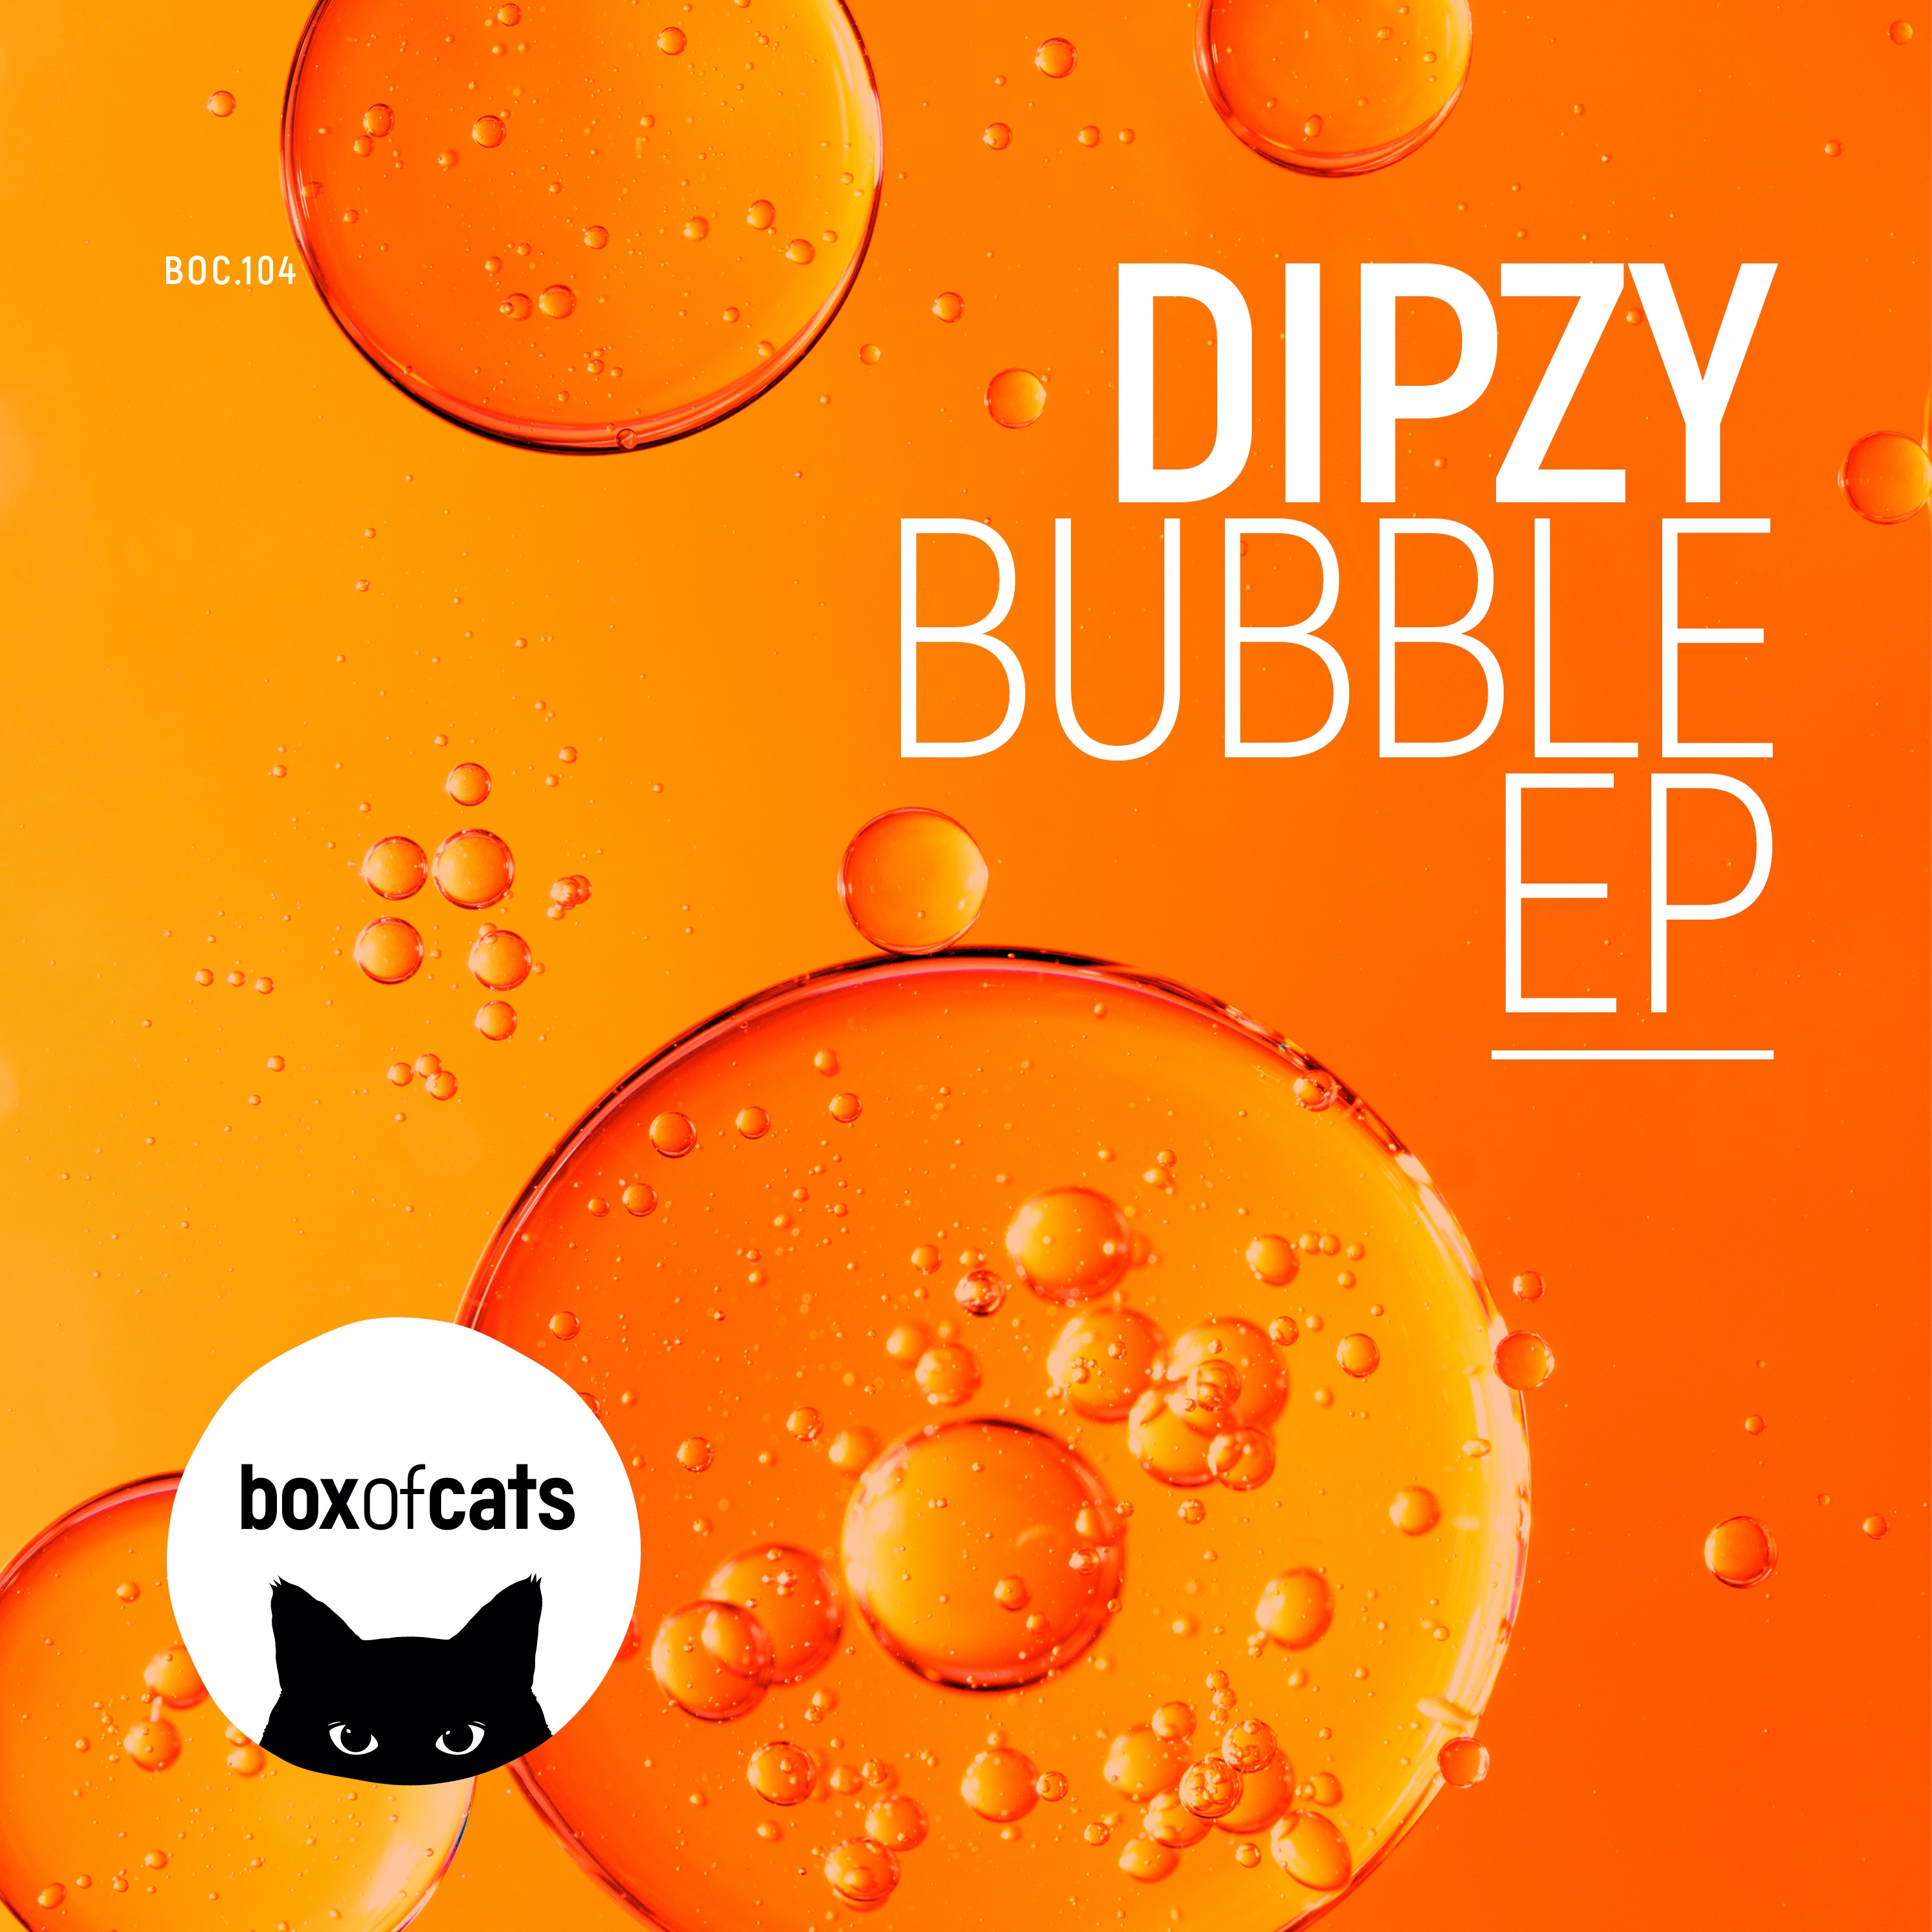 Ներբեռնե Dipzy - Bubble (BOC104)